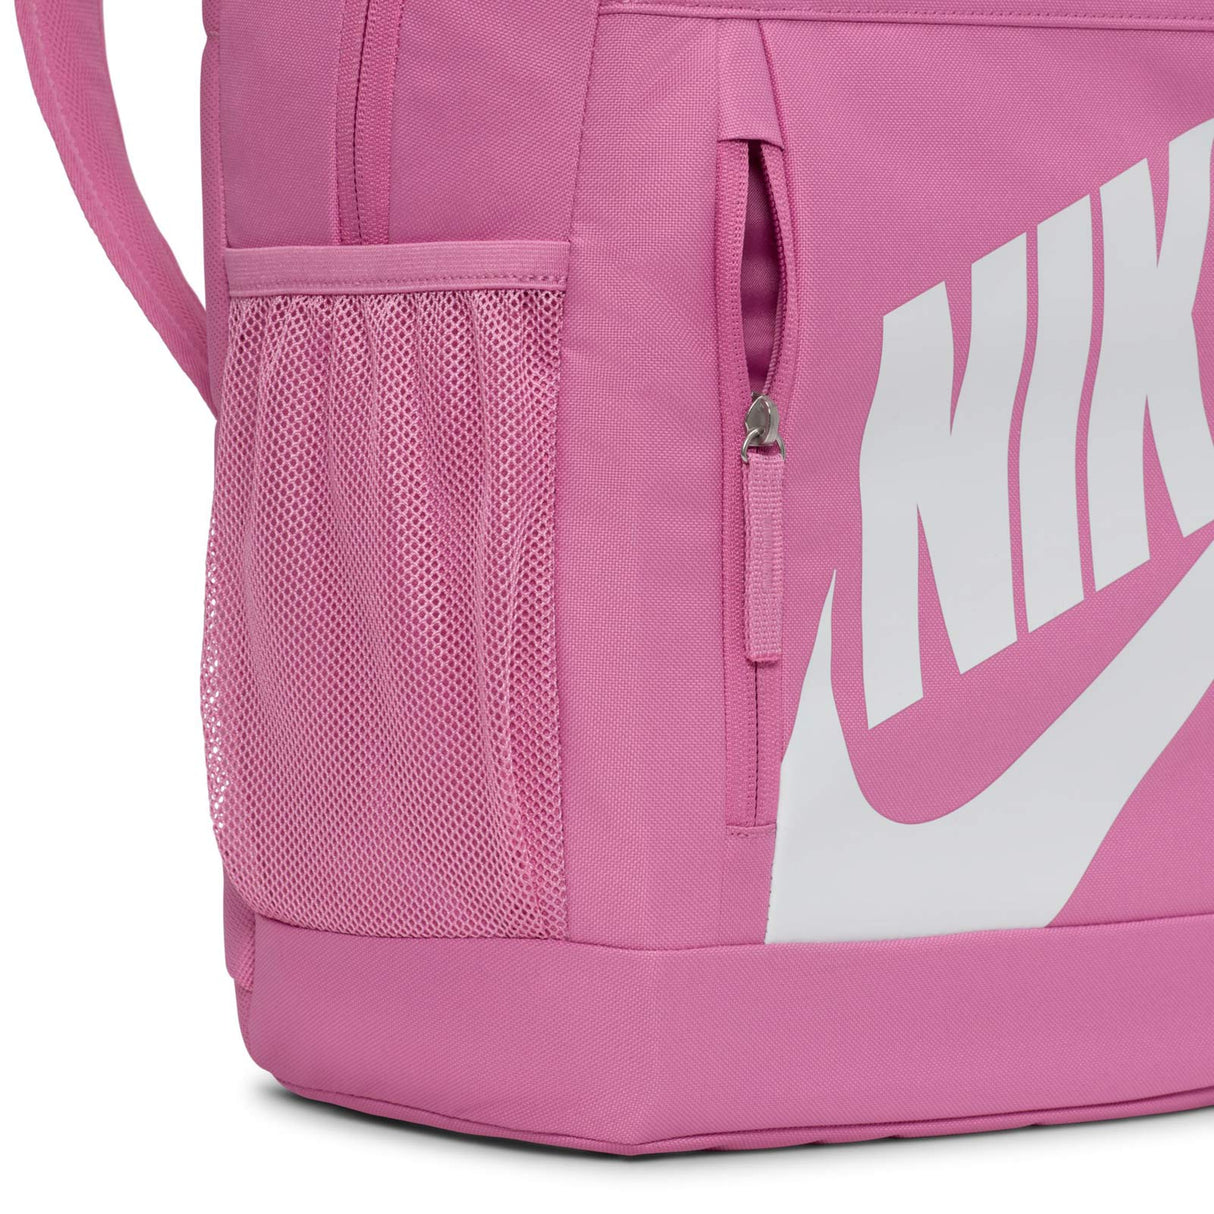 Nike Elemental Kids Backpack (20L)